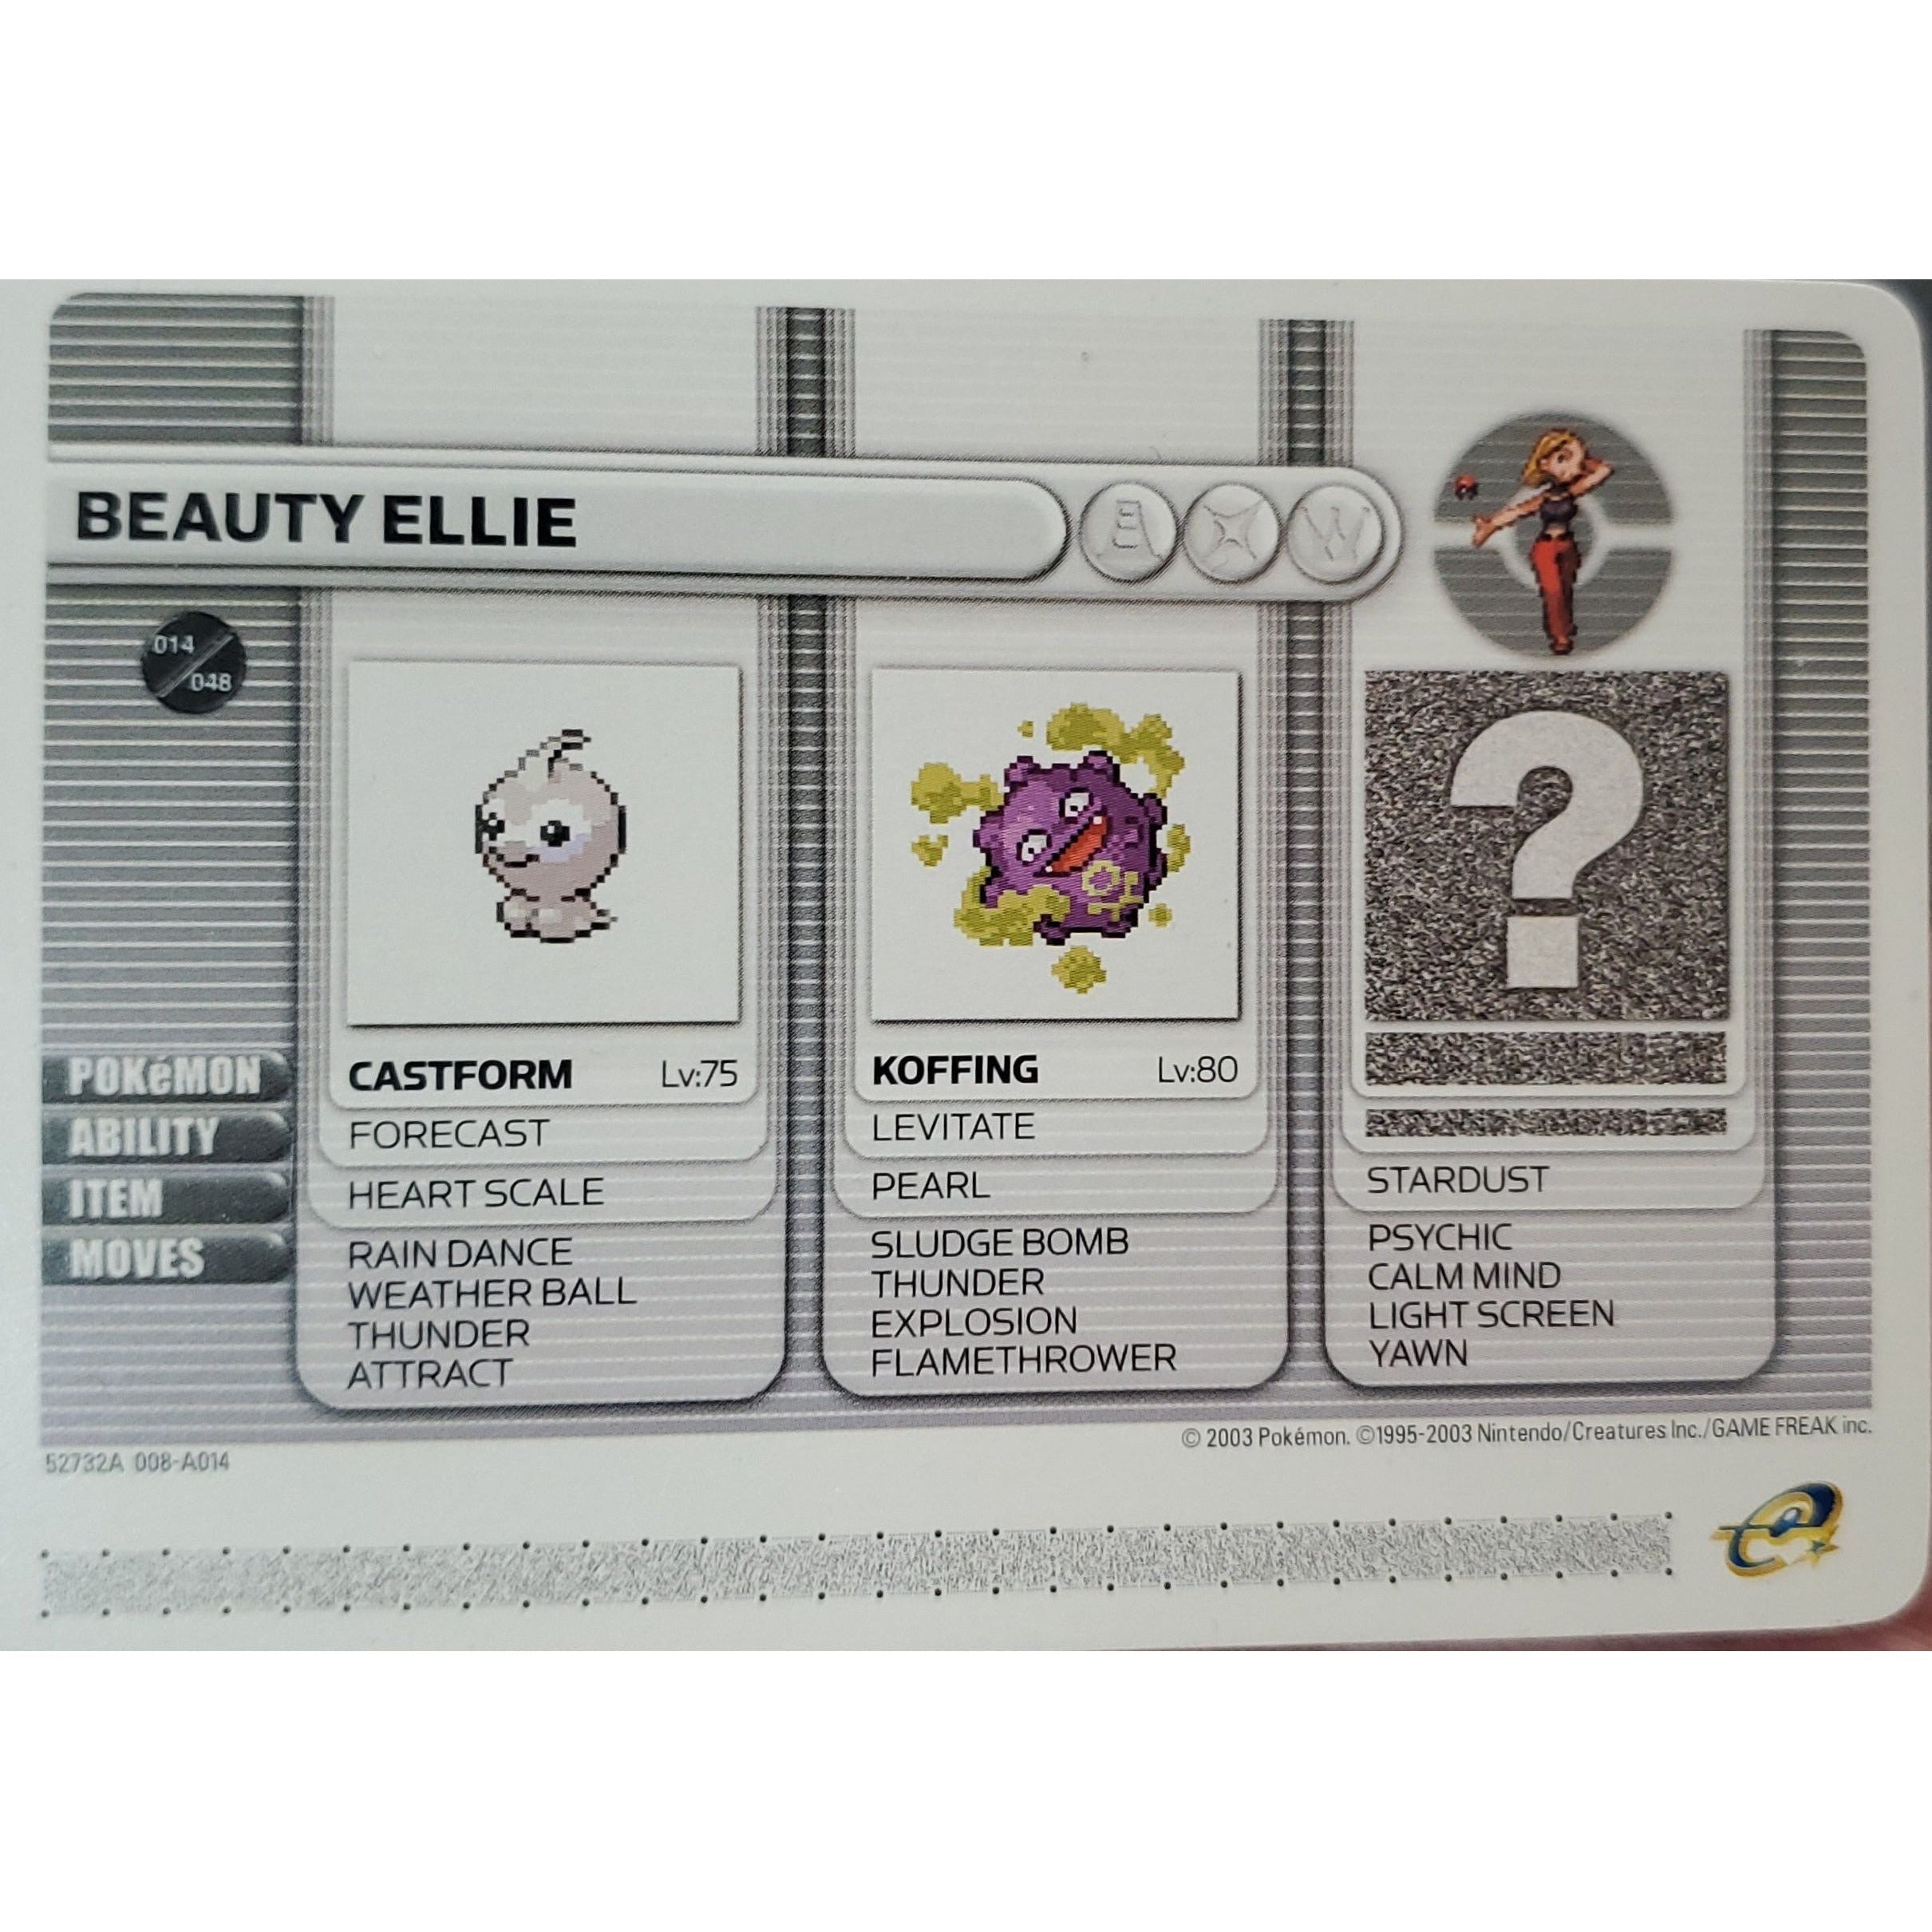 GBA - Pokemon Battle Card - Beauty Ellie